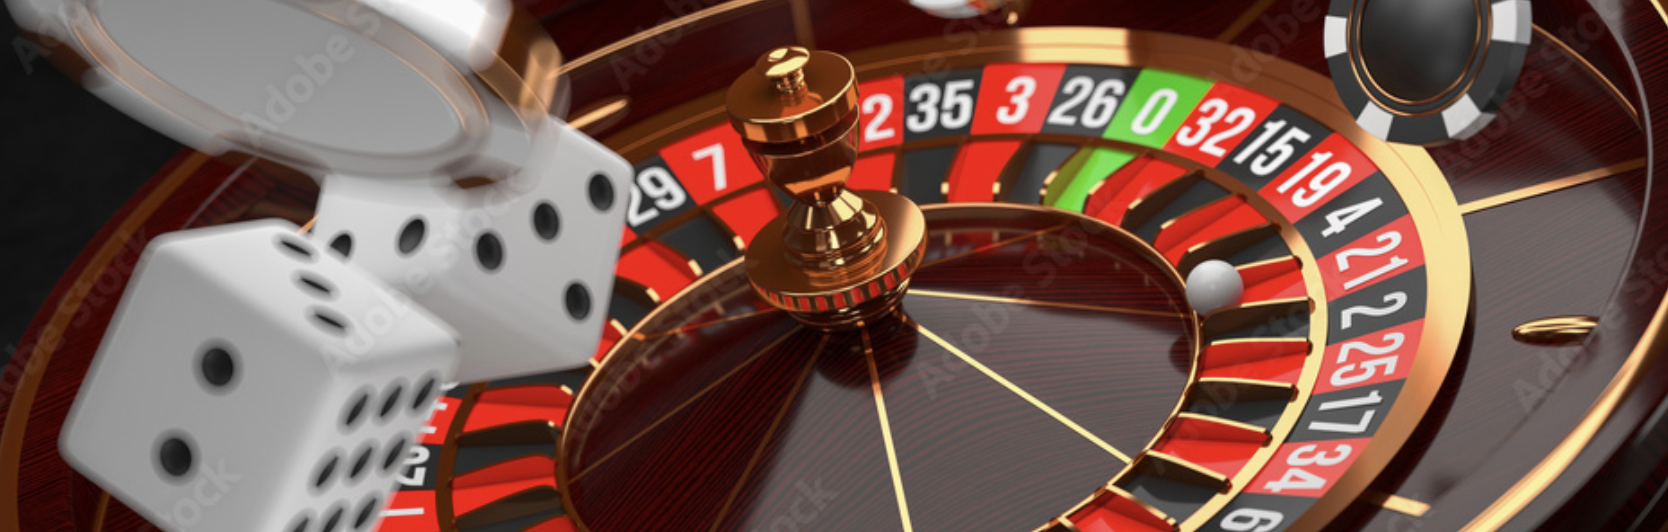 compare online casino sign up bonus